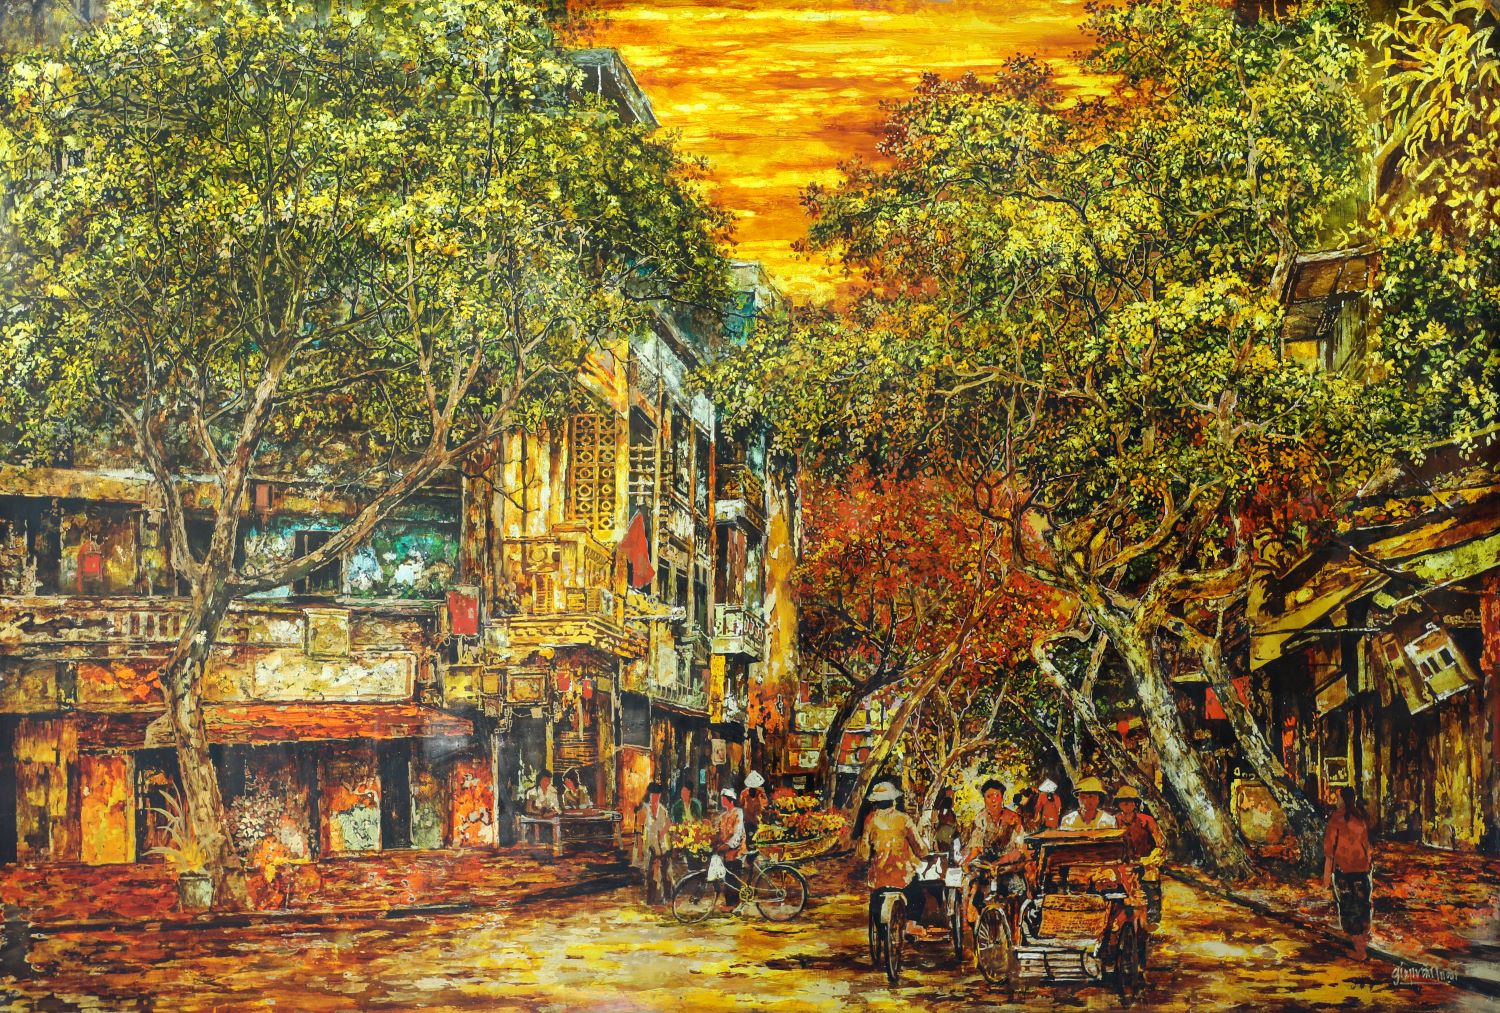 Golden Sunlight on Street V - Vietnamese Lacquer Painting by Artist Giap Van Tuan